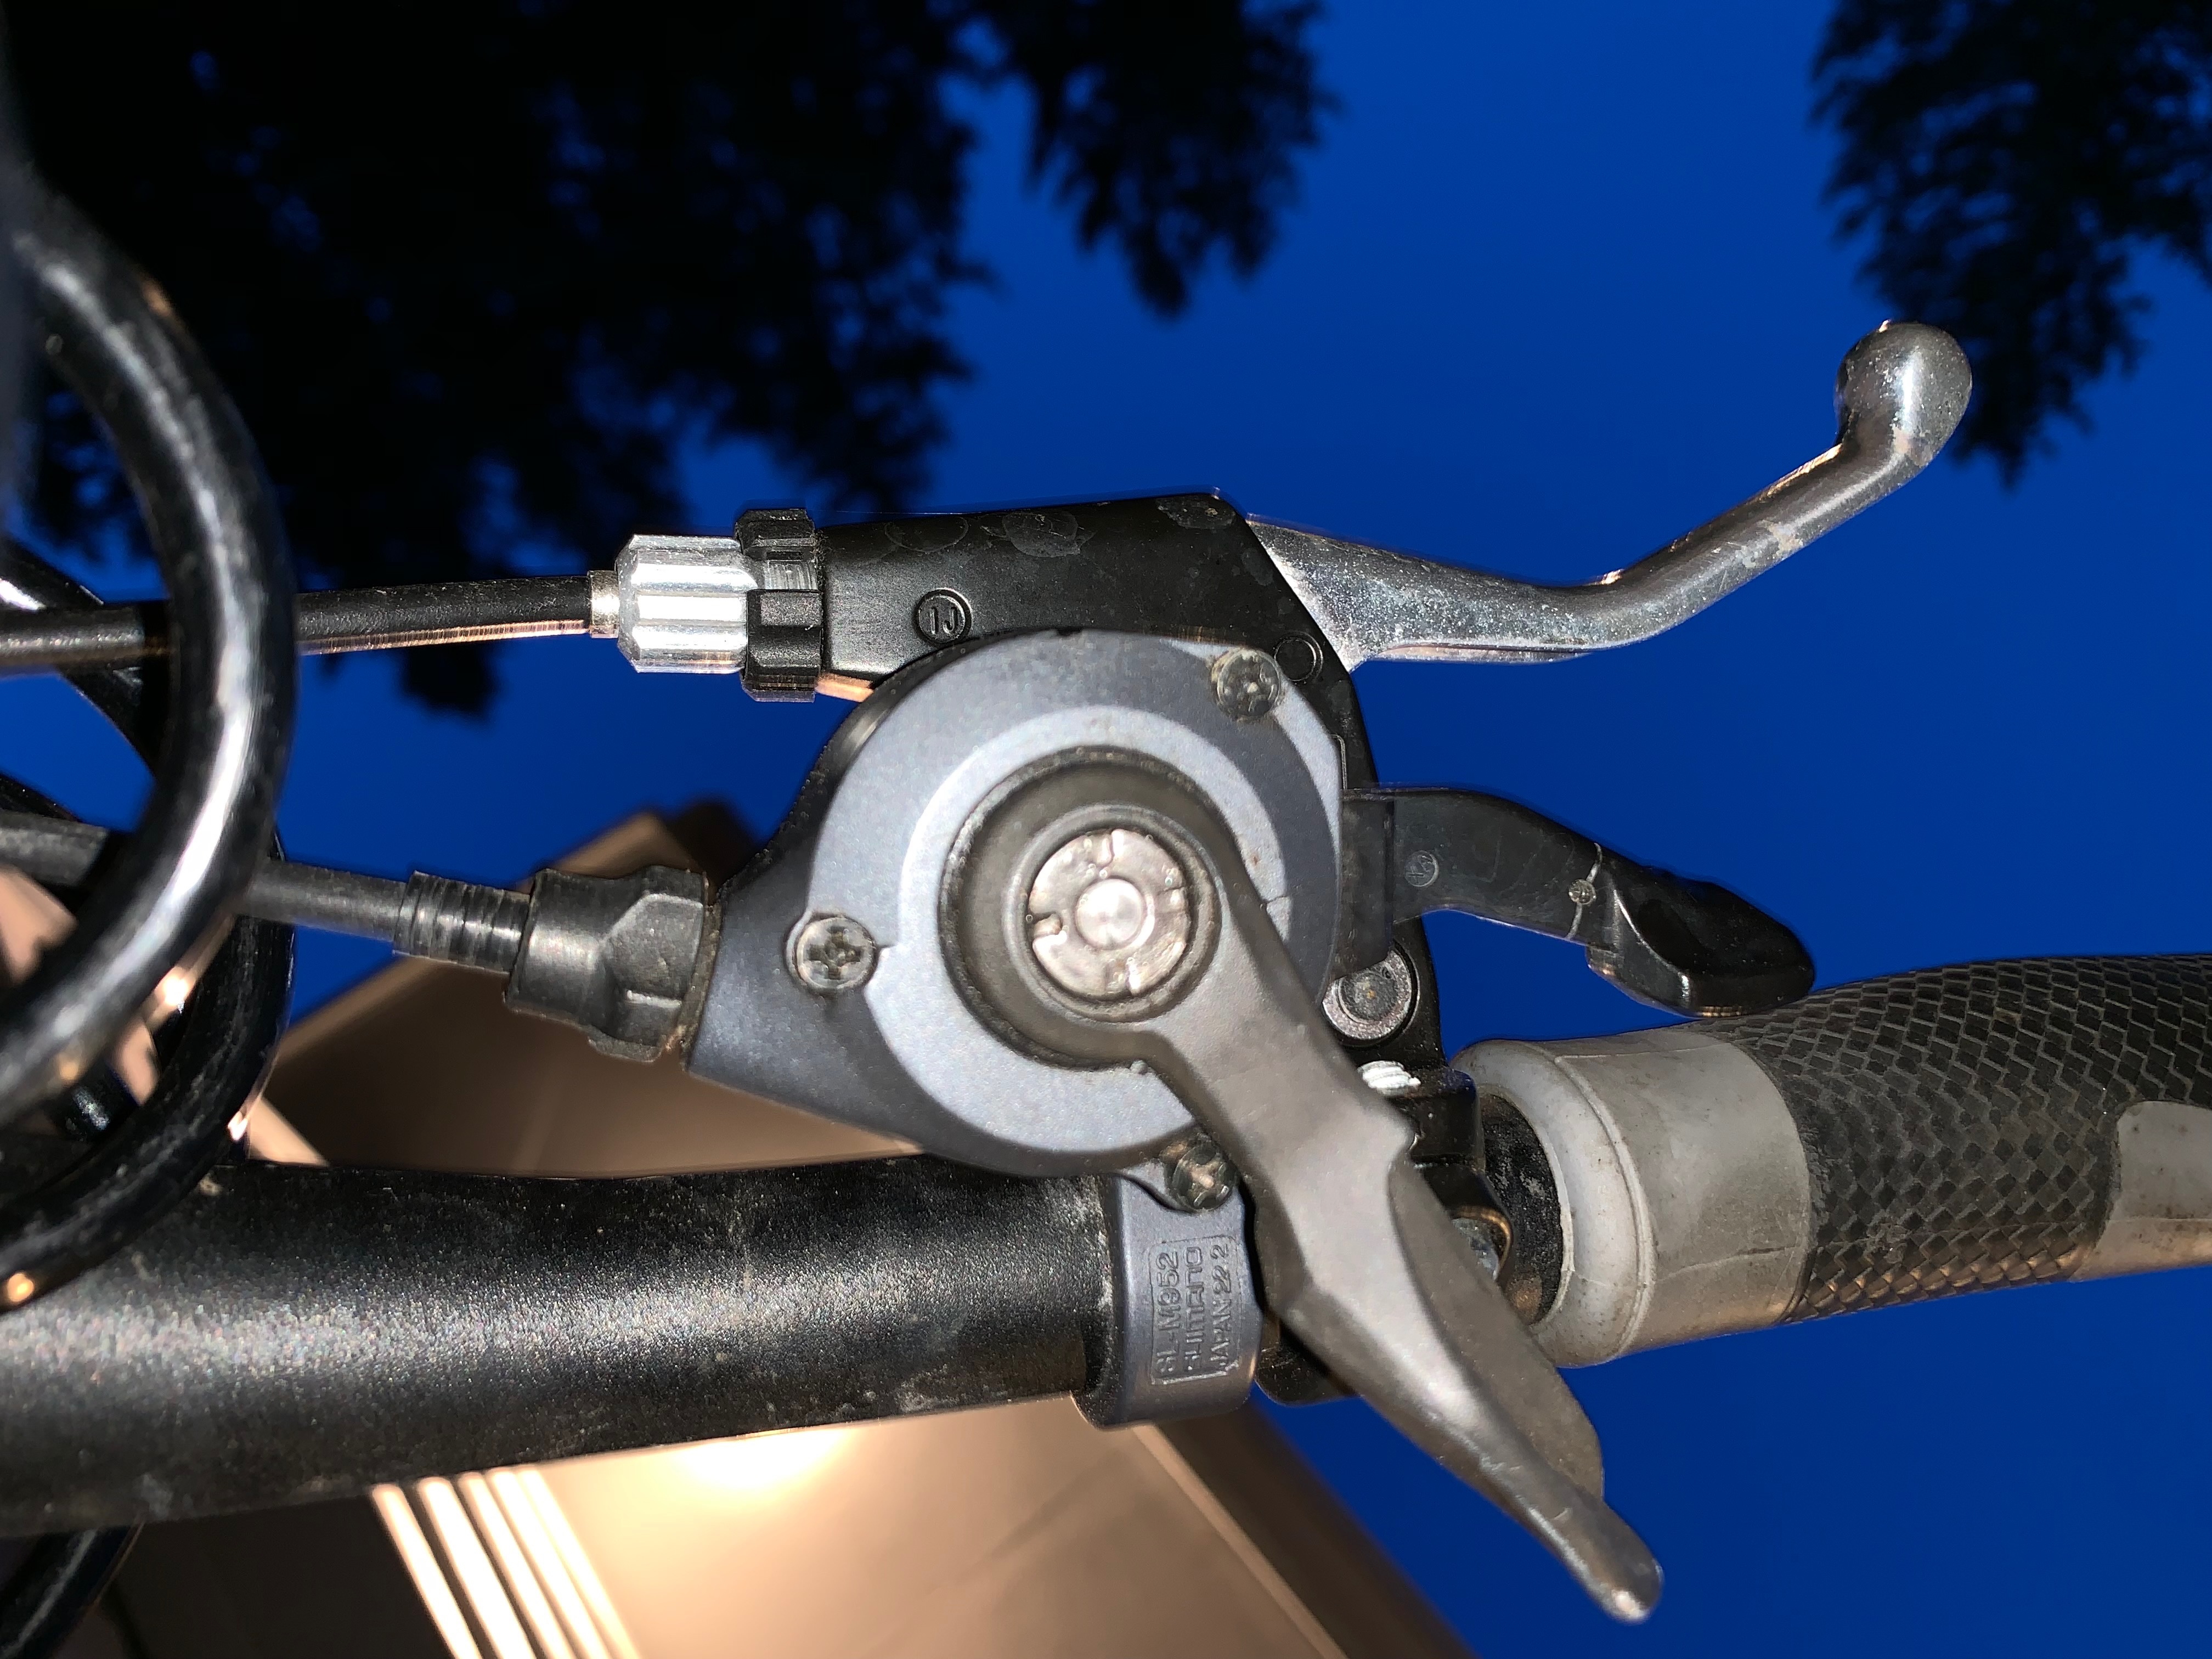 3-Speed Shimano Schalthebel schaltet nicht auf 3. Rad | MTB-News.de | IBC  Mountainbike Forum